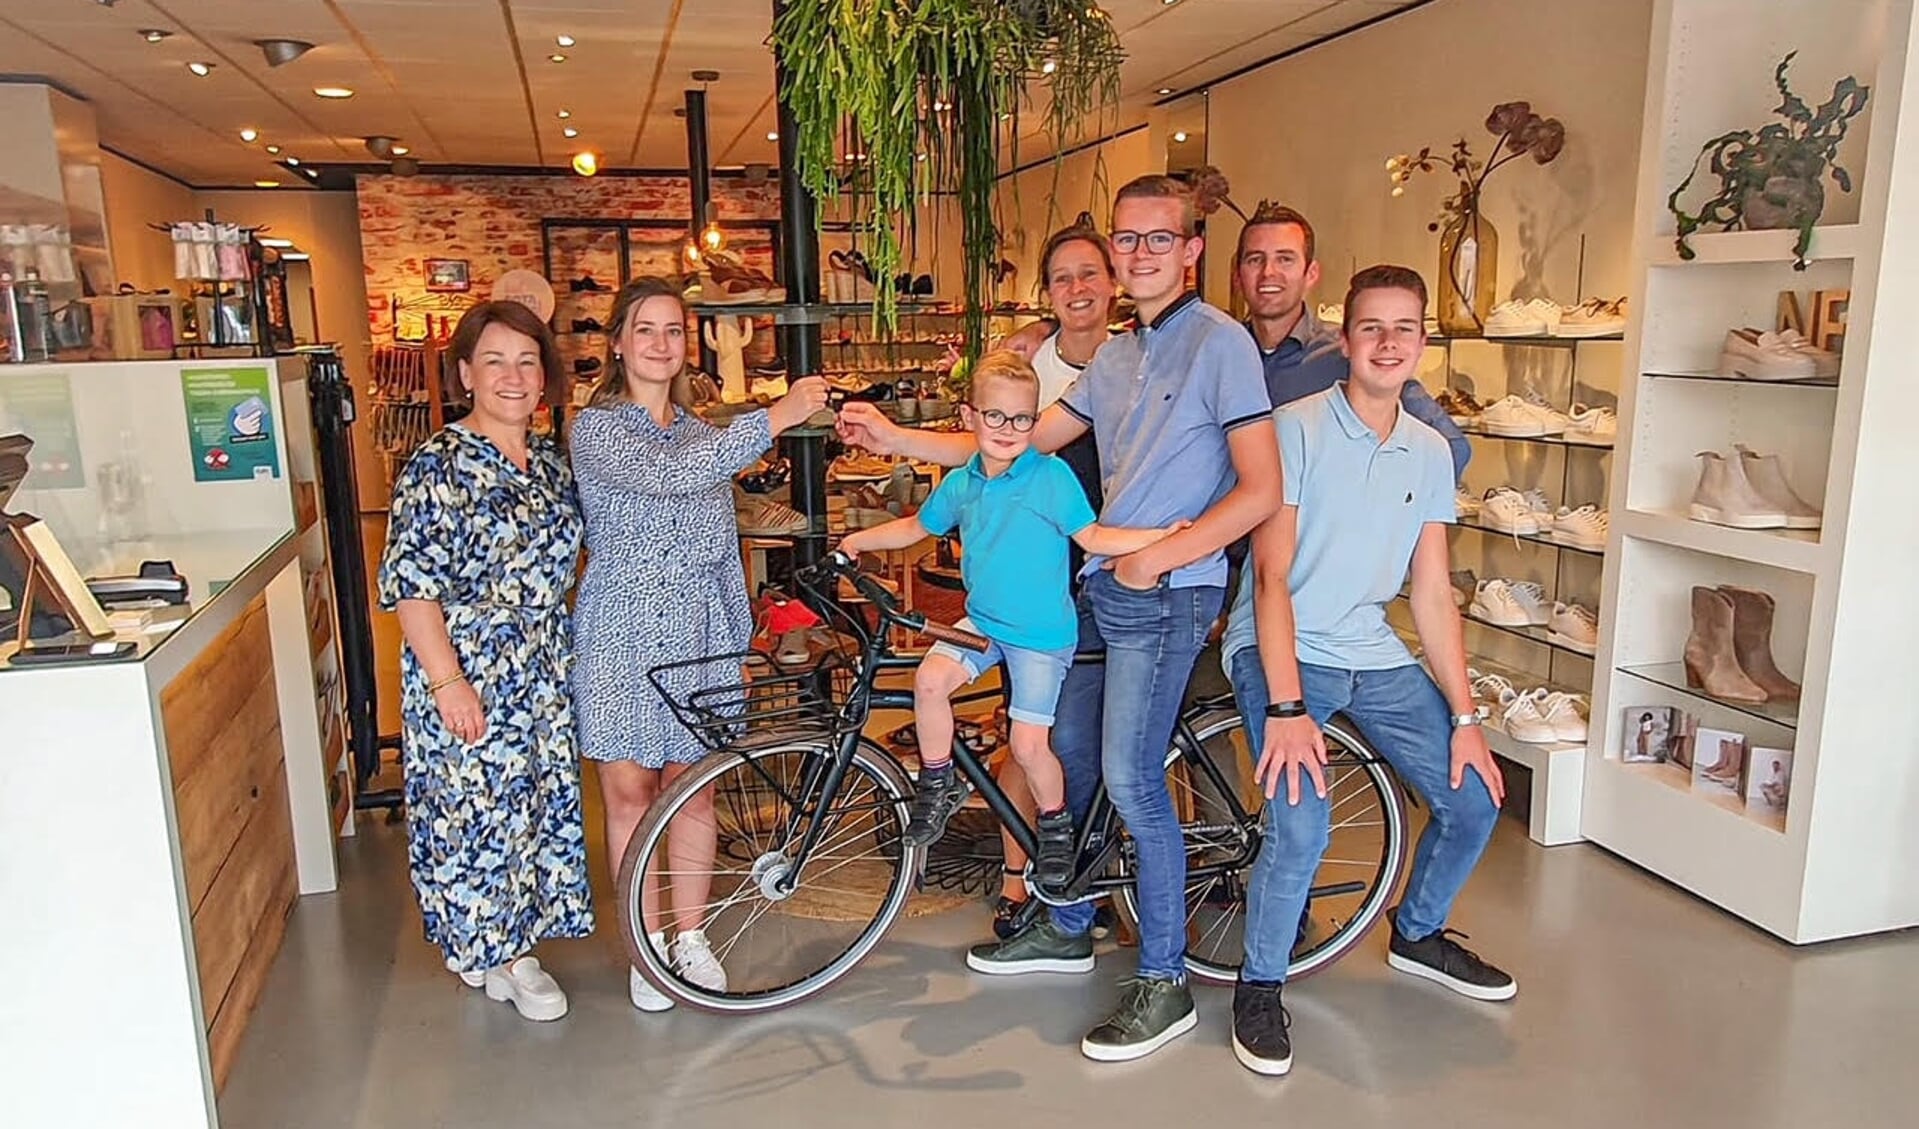 De familie Van den Bosch uit Scherpenzeel won een fiets door mee te doen aan een actie van Pas Schoenmode.